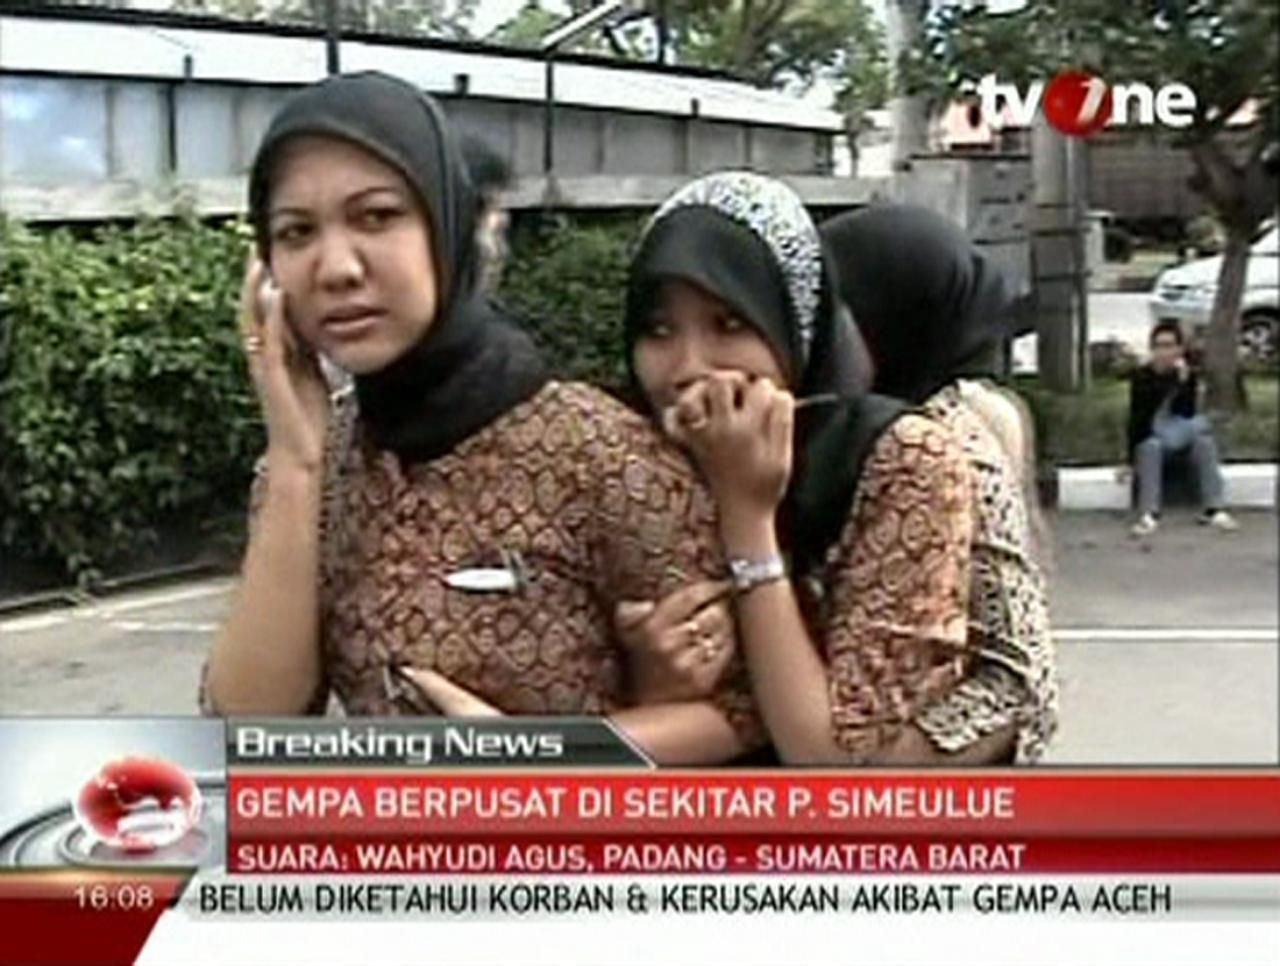 Indonésie v pohotovosti. Po zemětřesení hrozí tsunami